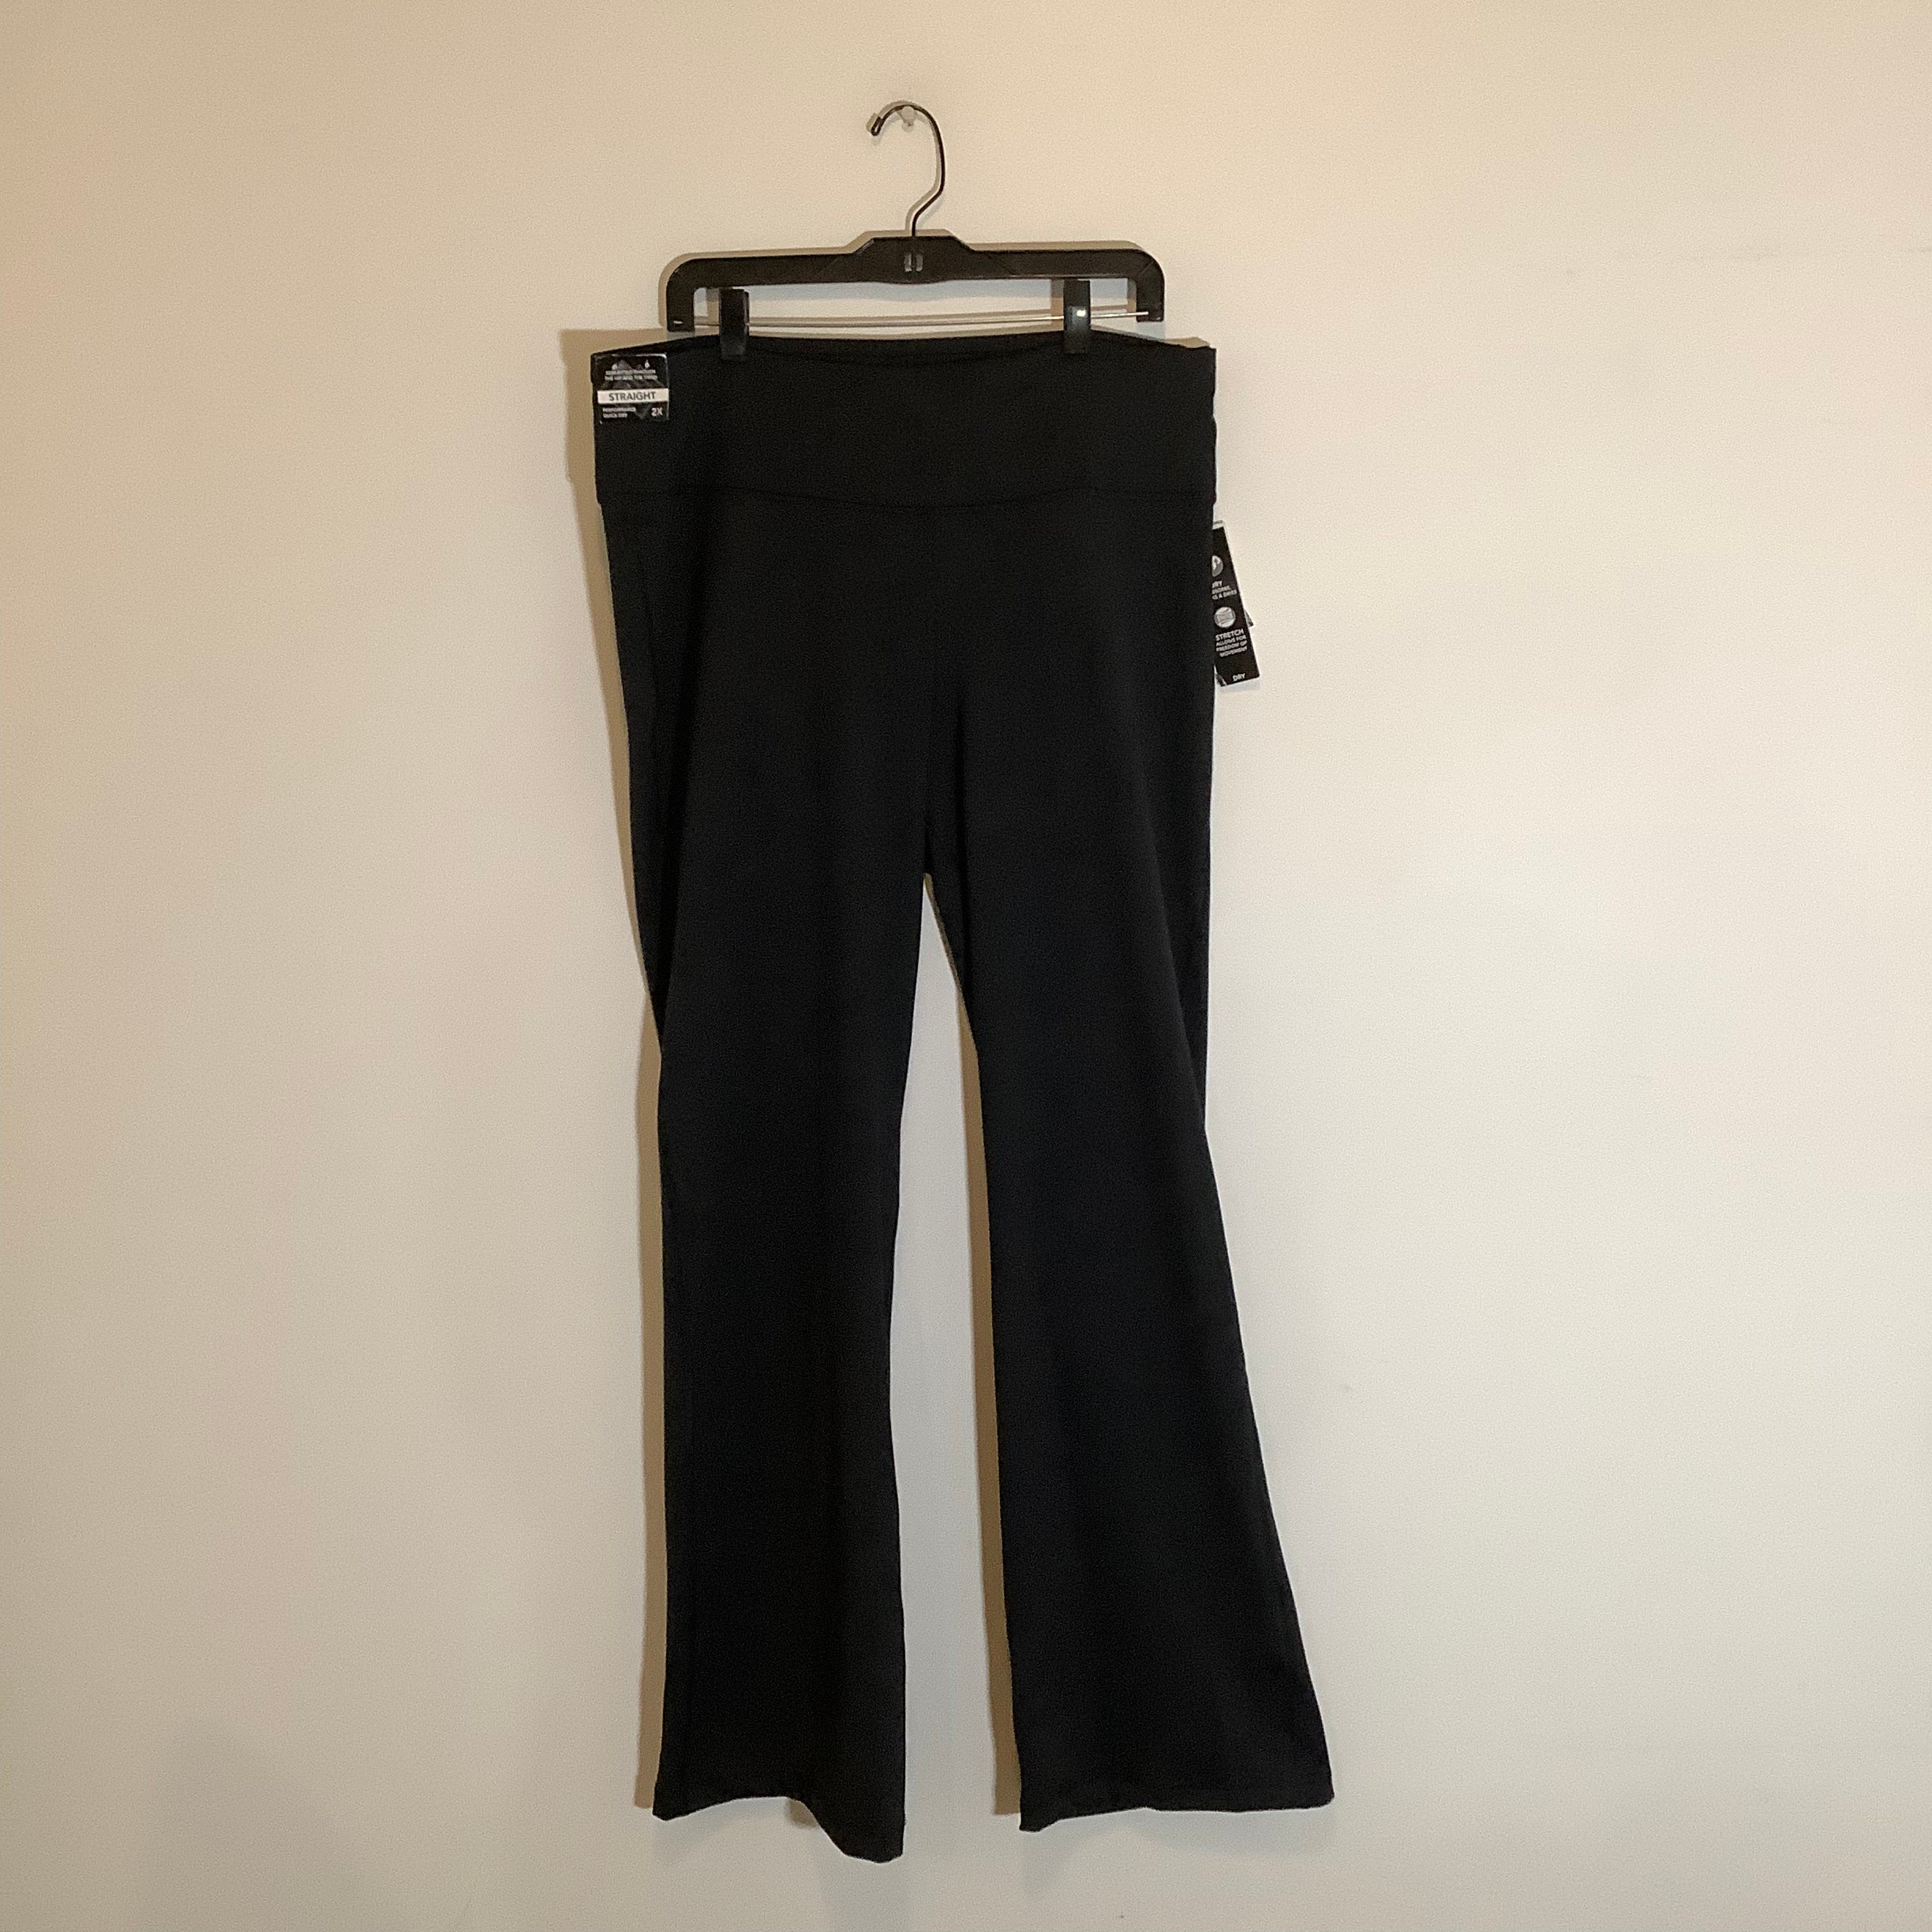 Zellos Black Pants Size 2X *NWT*